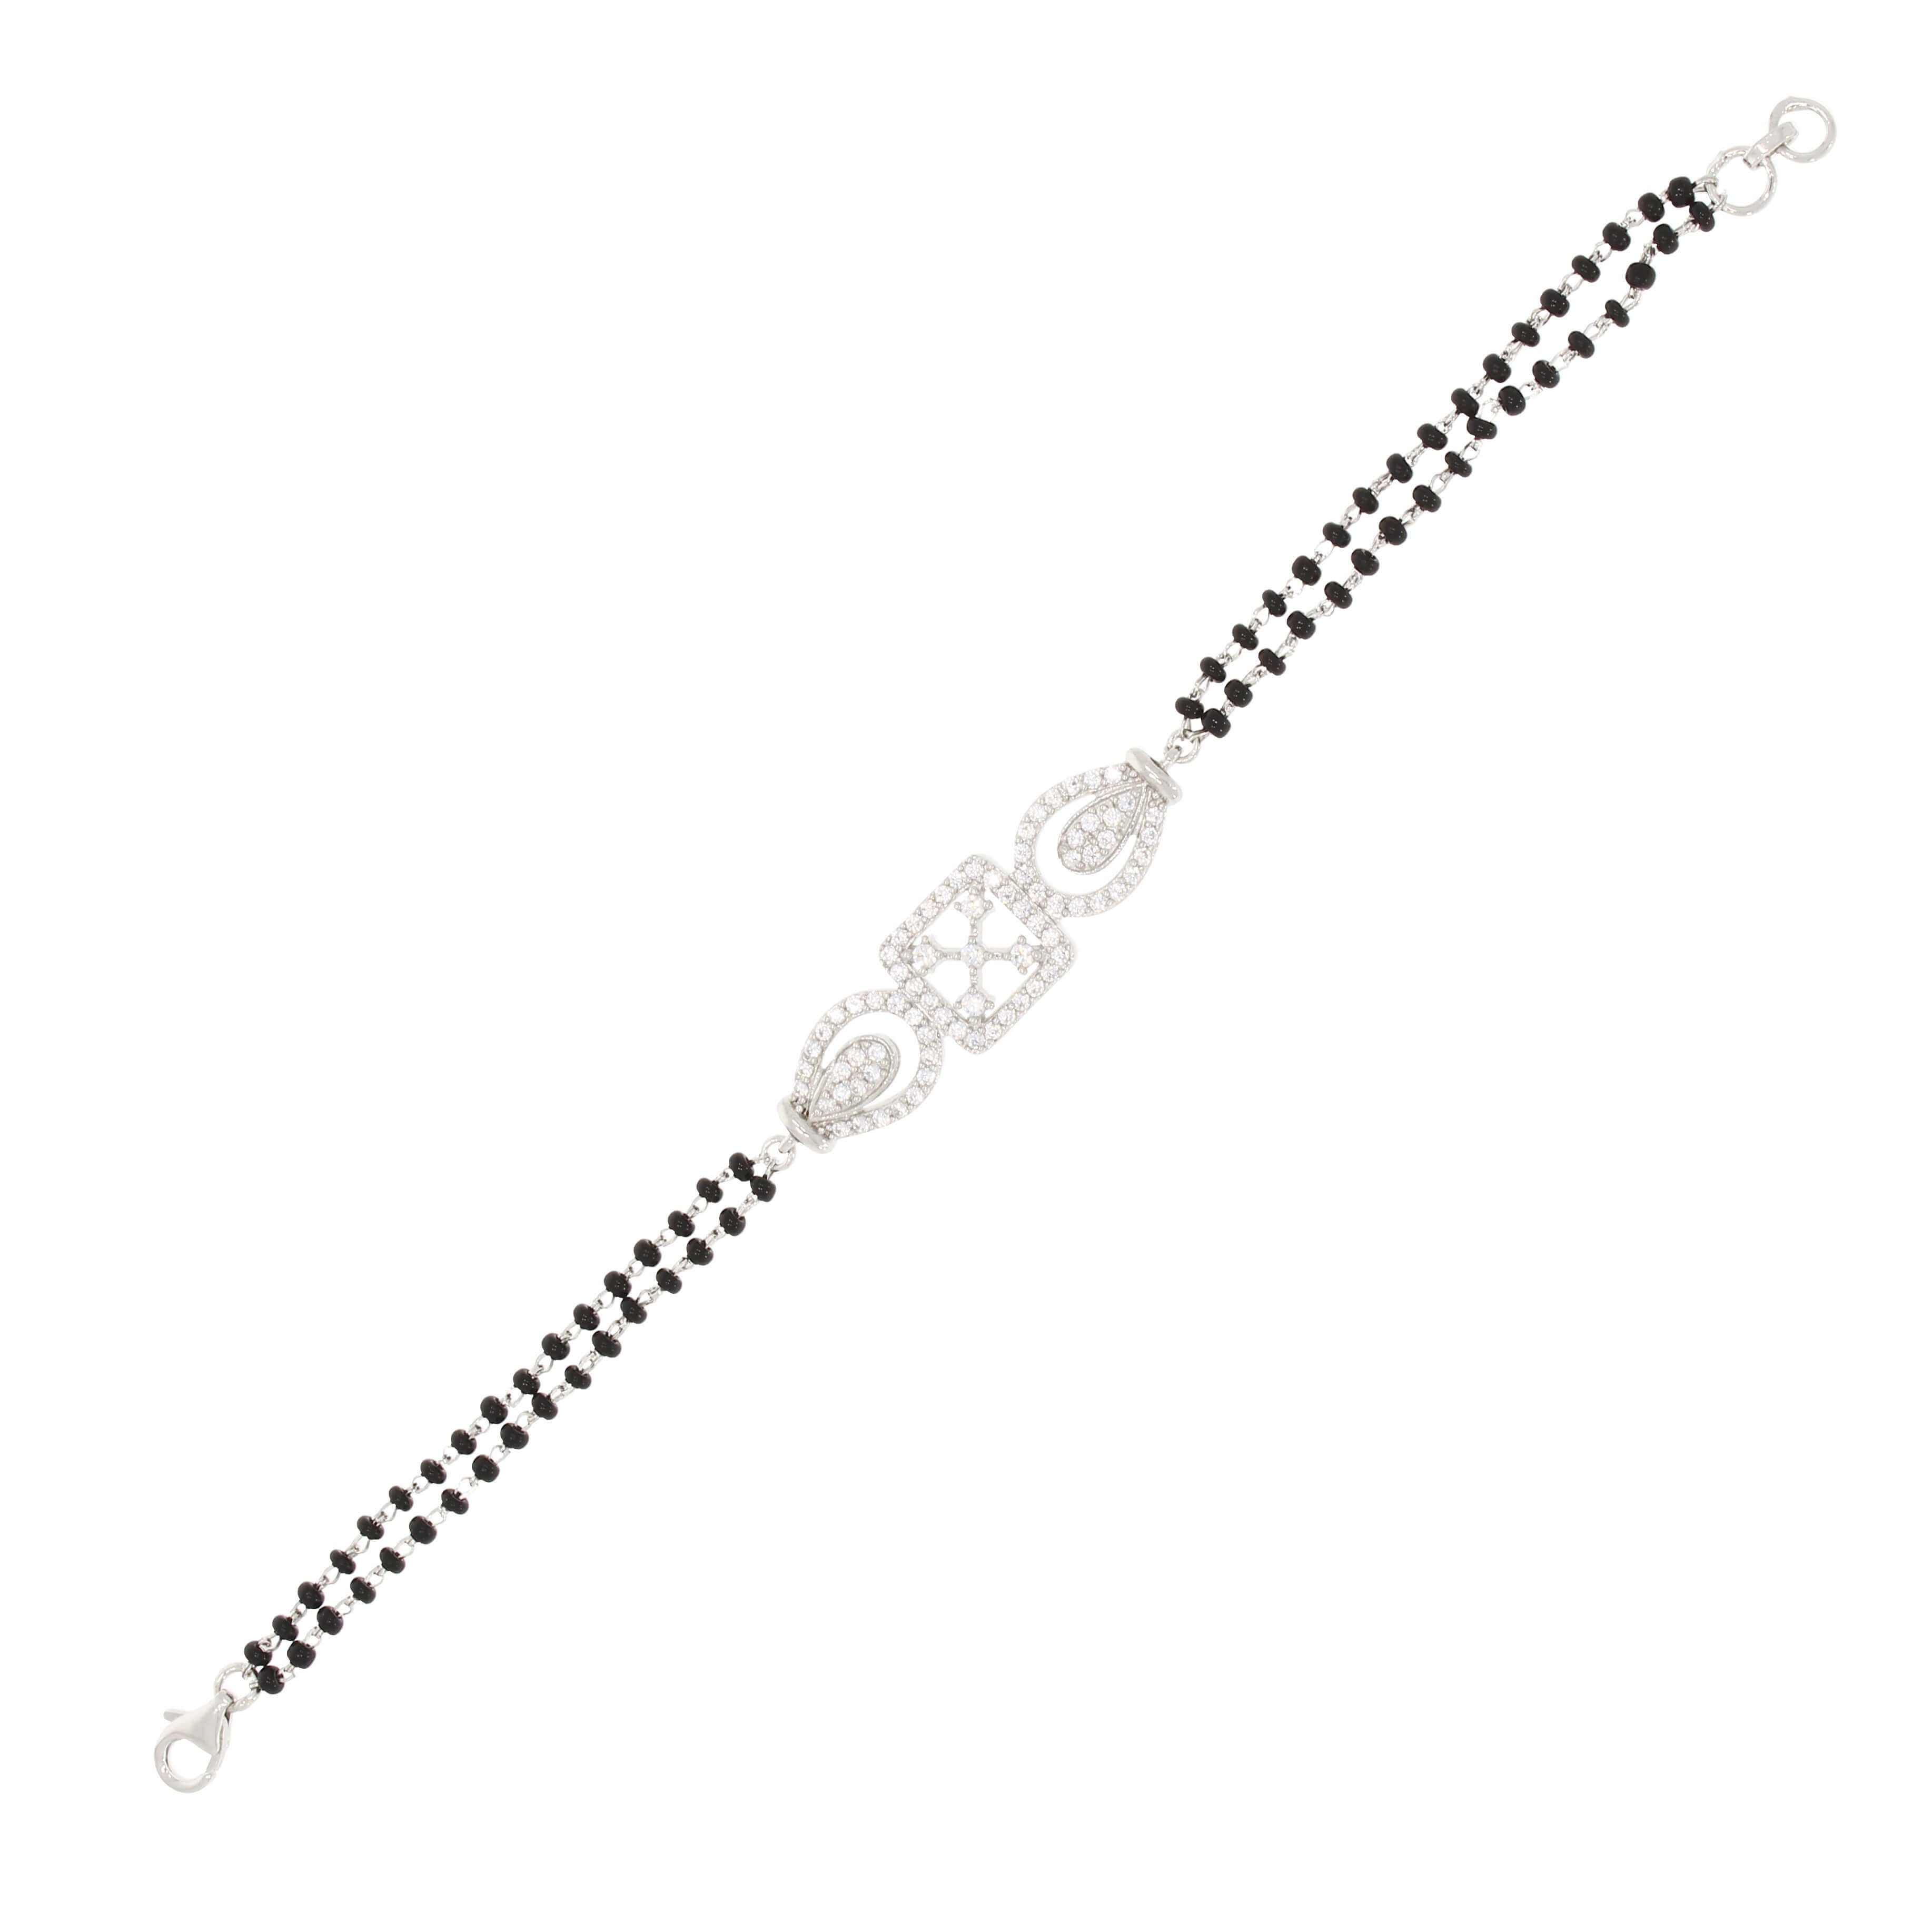 Silver Embellished Mangalsutra Bracelet